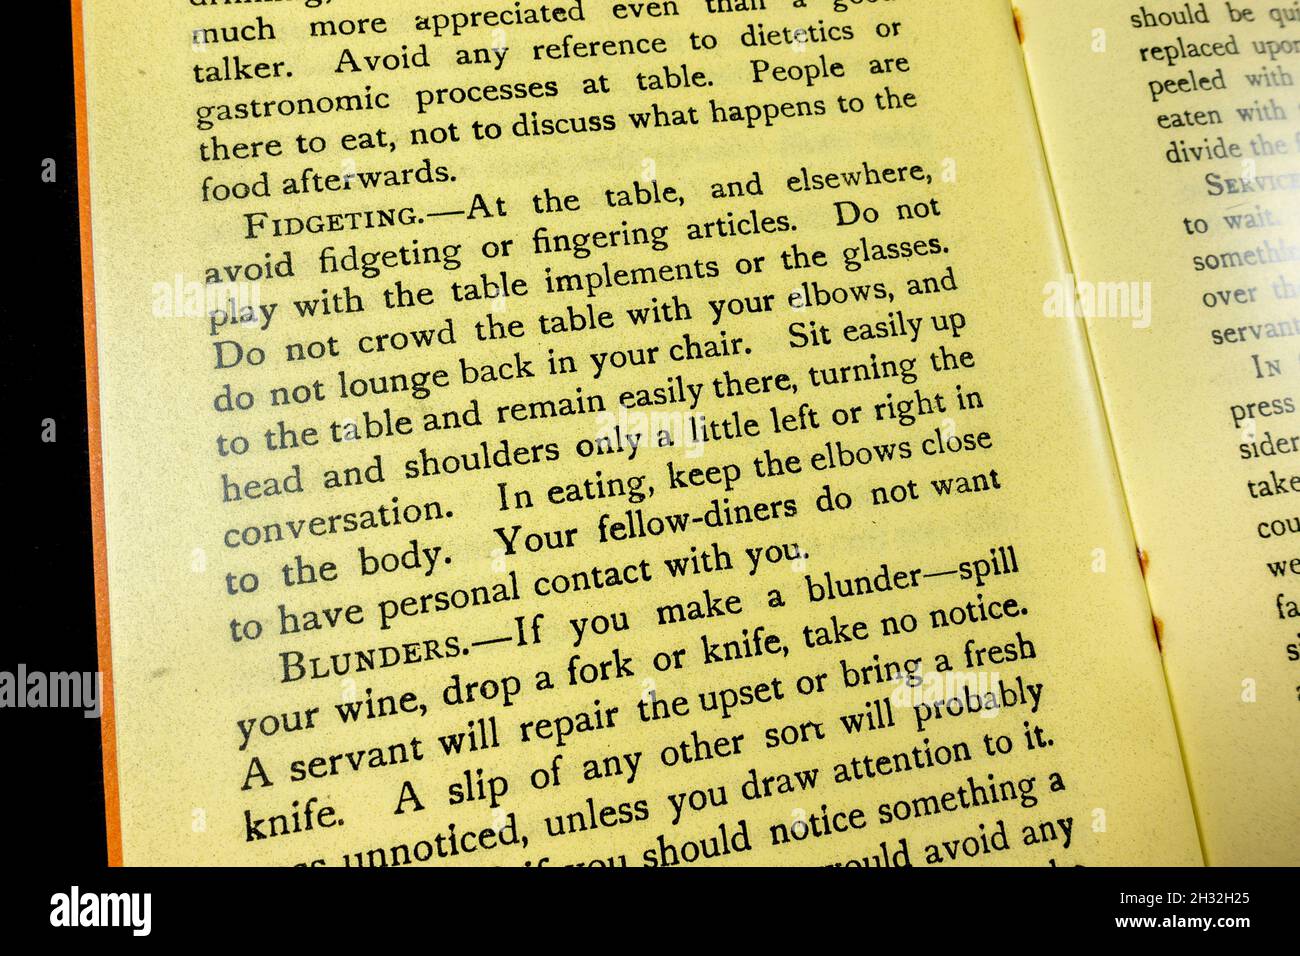 'Fidgeting' y 'blunders' en el capítulo 'Modales en el hogar y en la mesa', folleto 'Etiquette in Everyday Life' de 1920 (réplica). Foto de stock